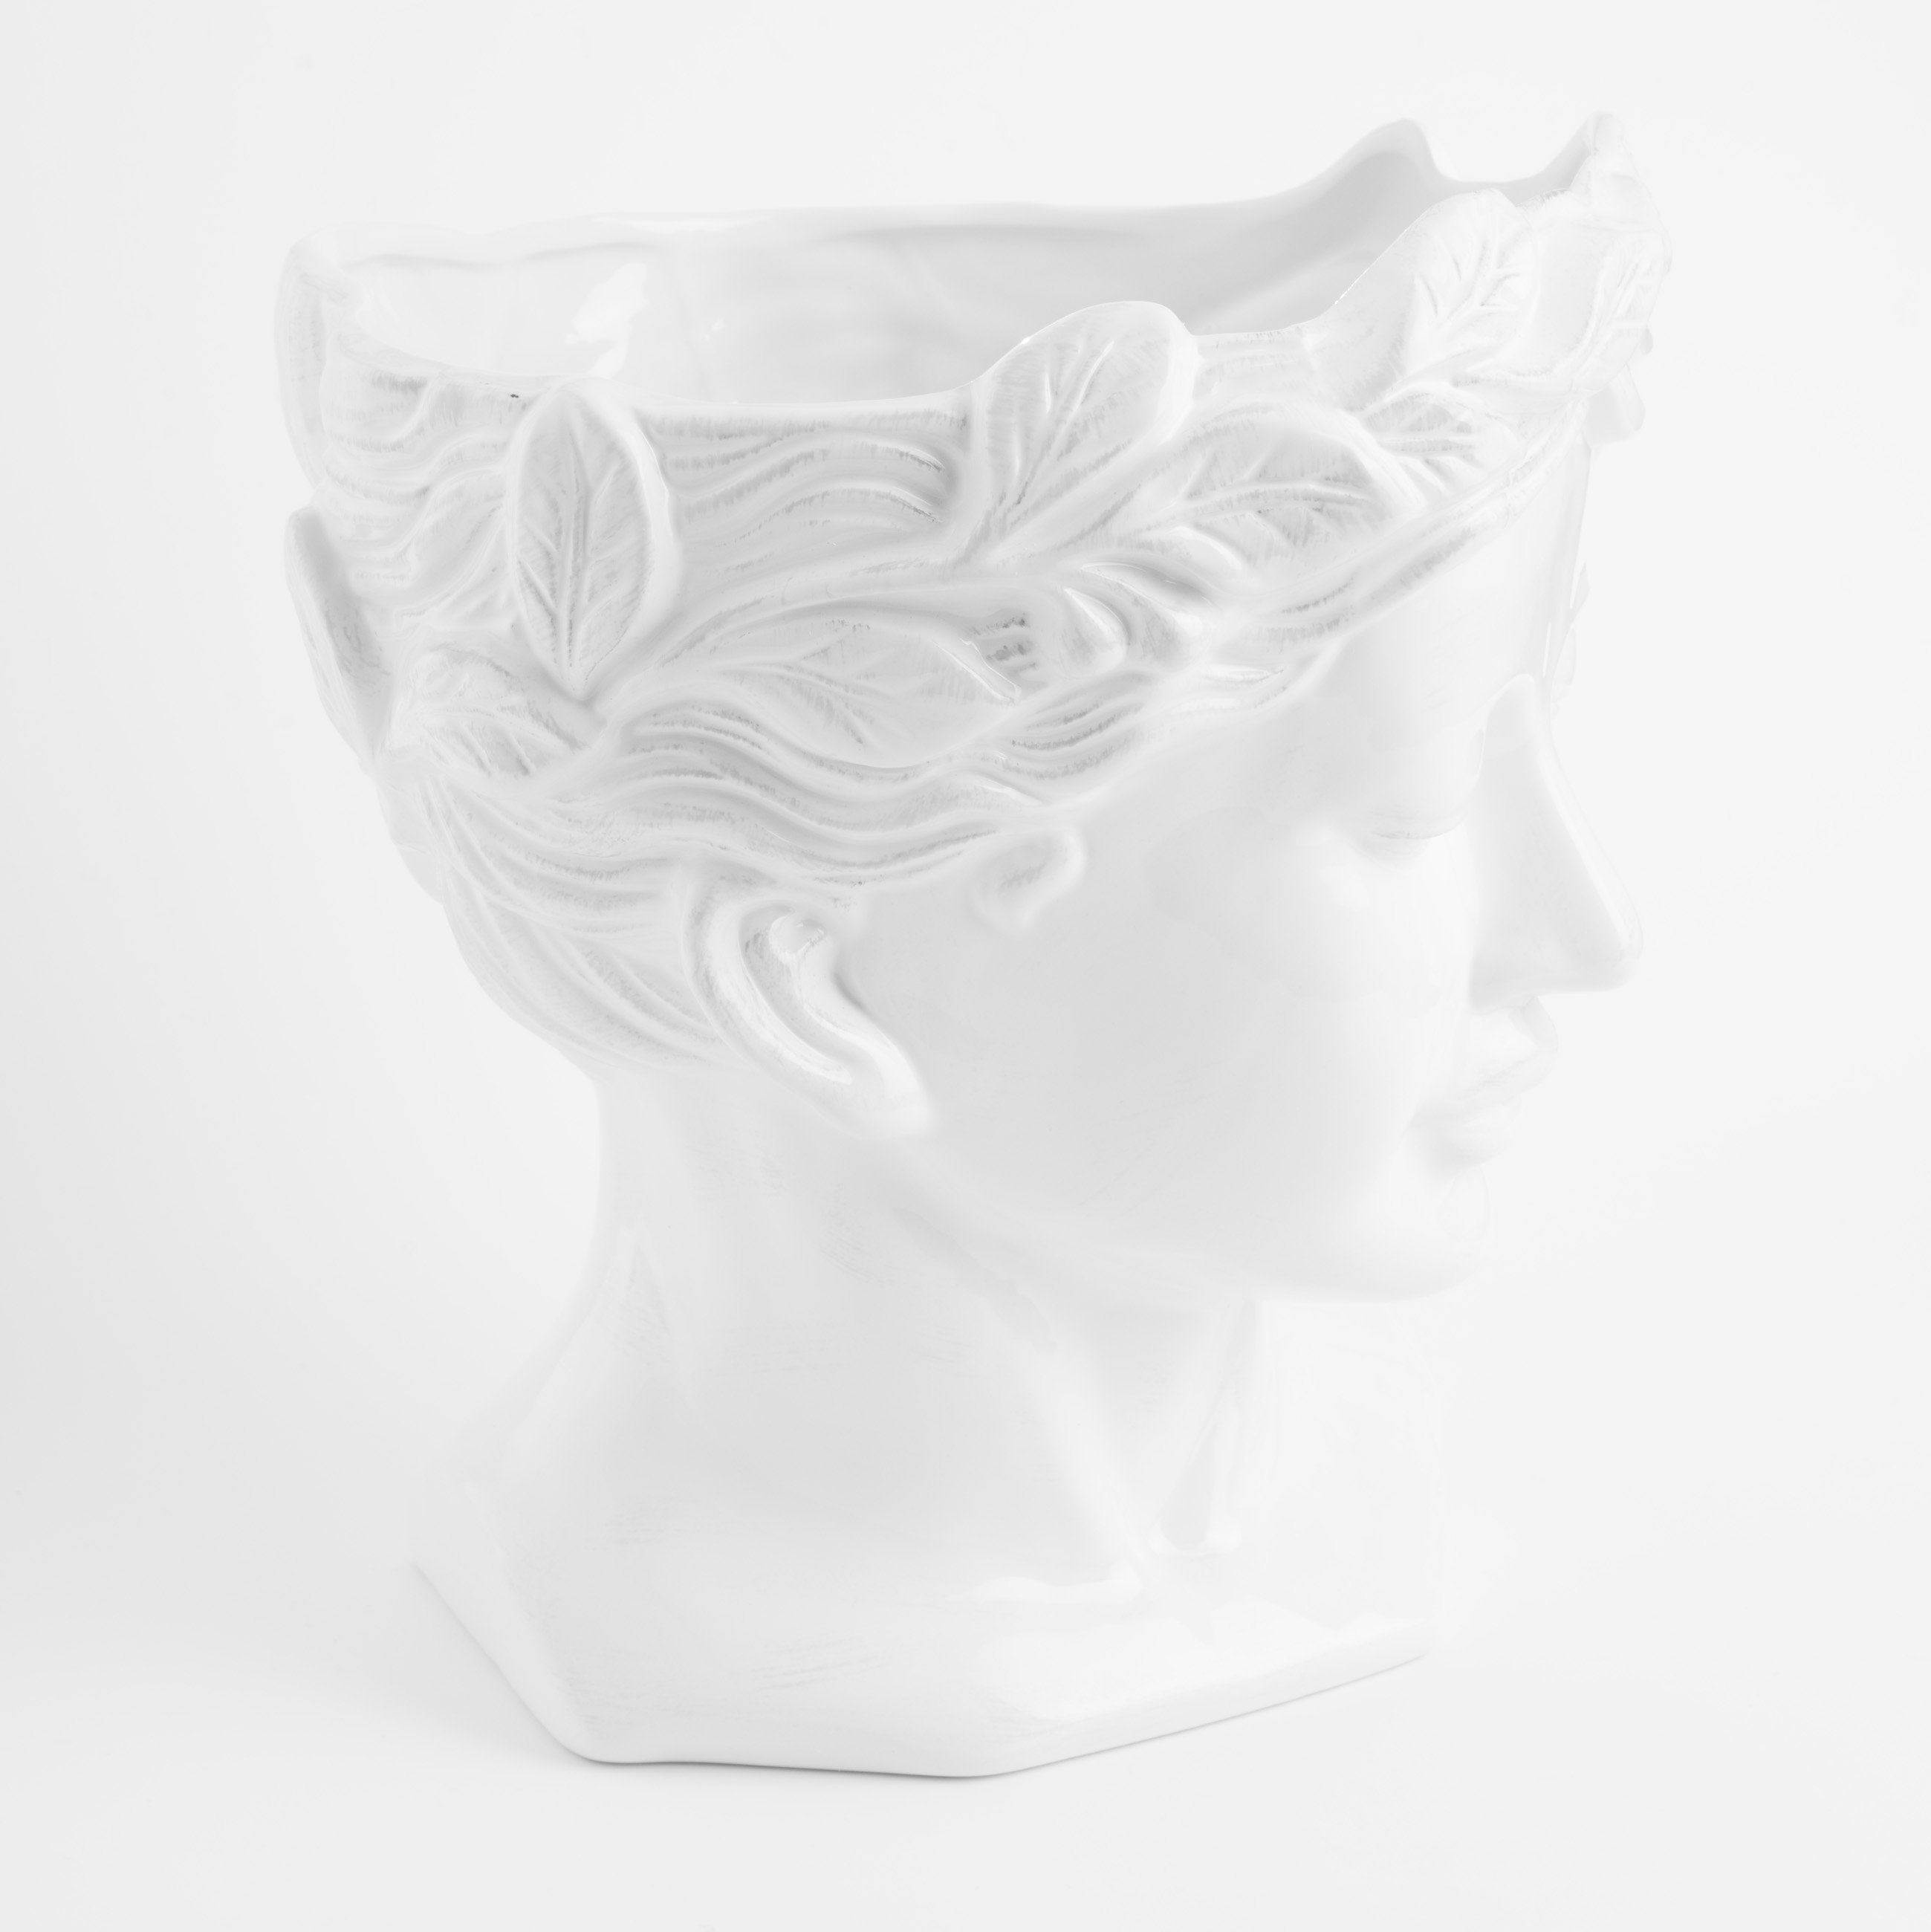 Ваза для цветов, 29 см, декоративная, керамика, белая, Афродита, Olympus изображение № 3